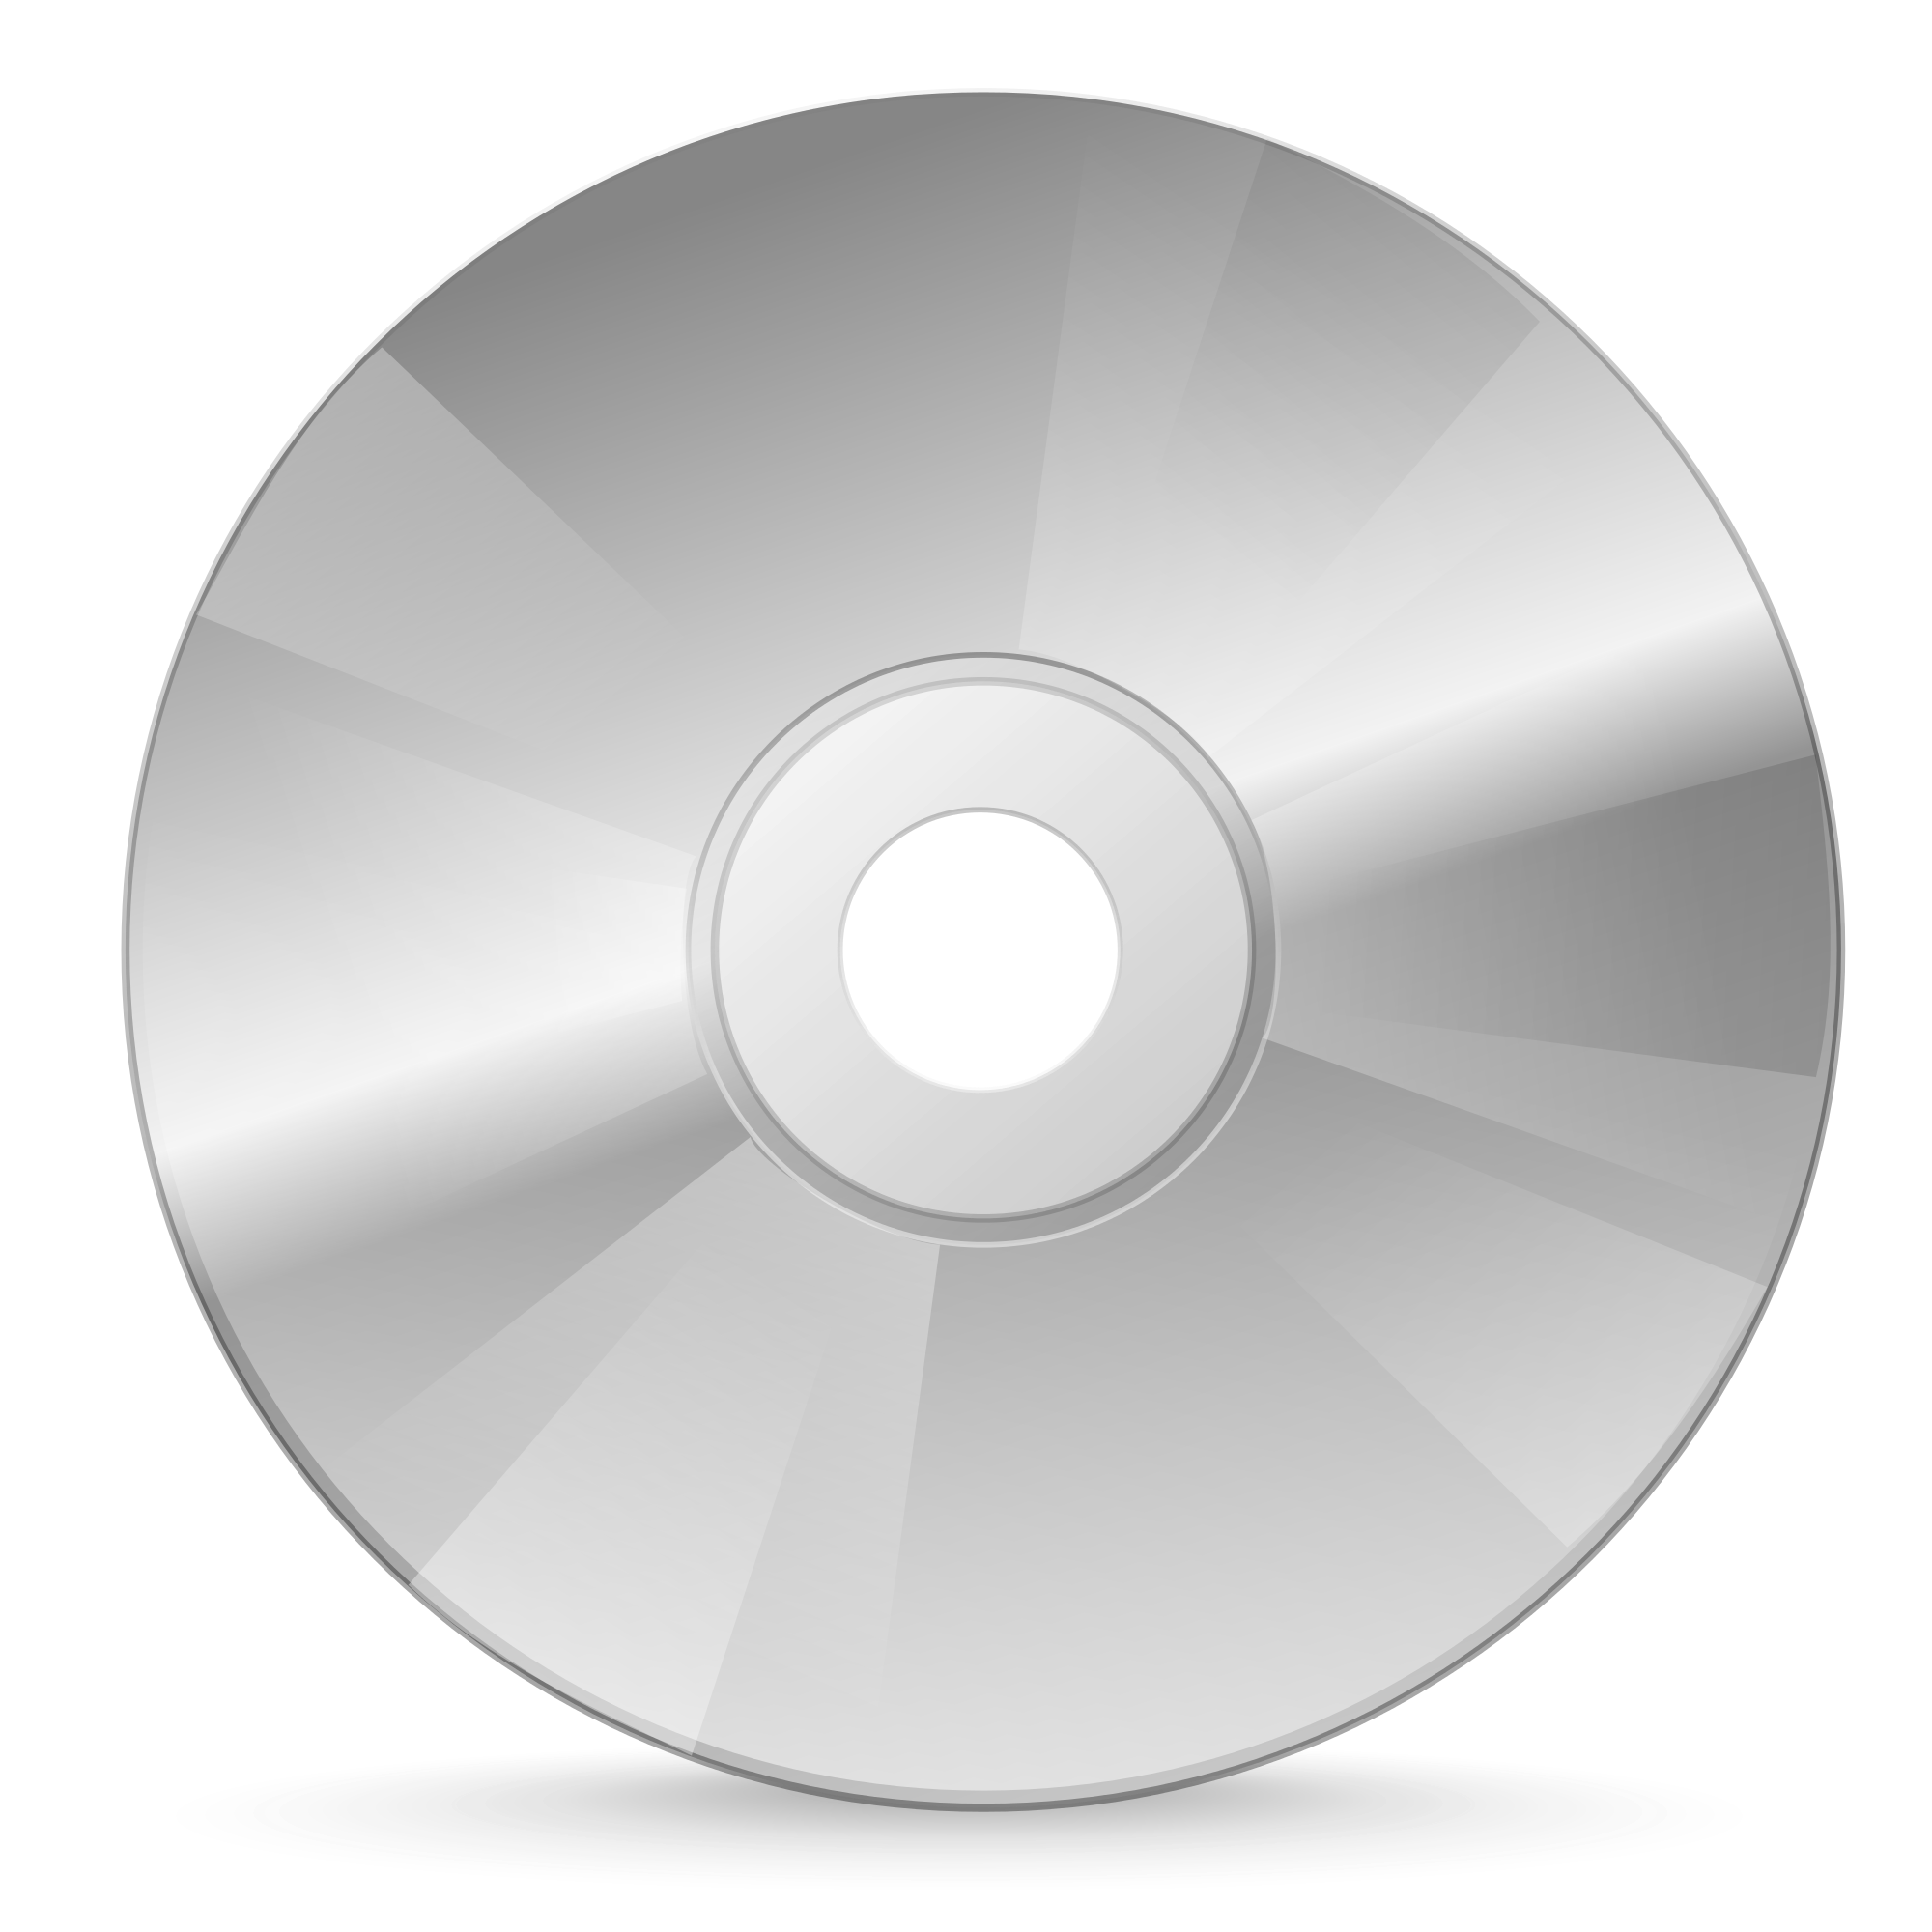 Файловый диск. CD - Compact Disk (компакт диск). CD (Compact Disk ROM) DVD (Digital versatile Disc). DVD-диски (DVD – Digital versatile Disk, цифровой универсальный диск),. Двд диск сбоку.